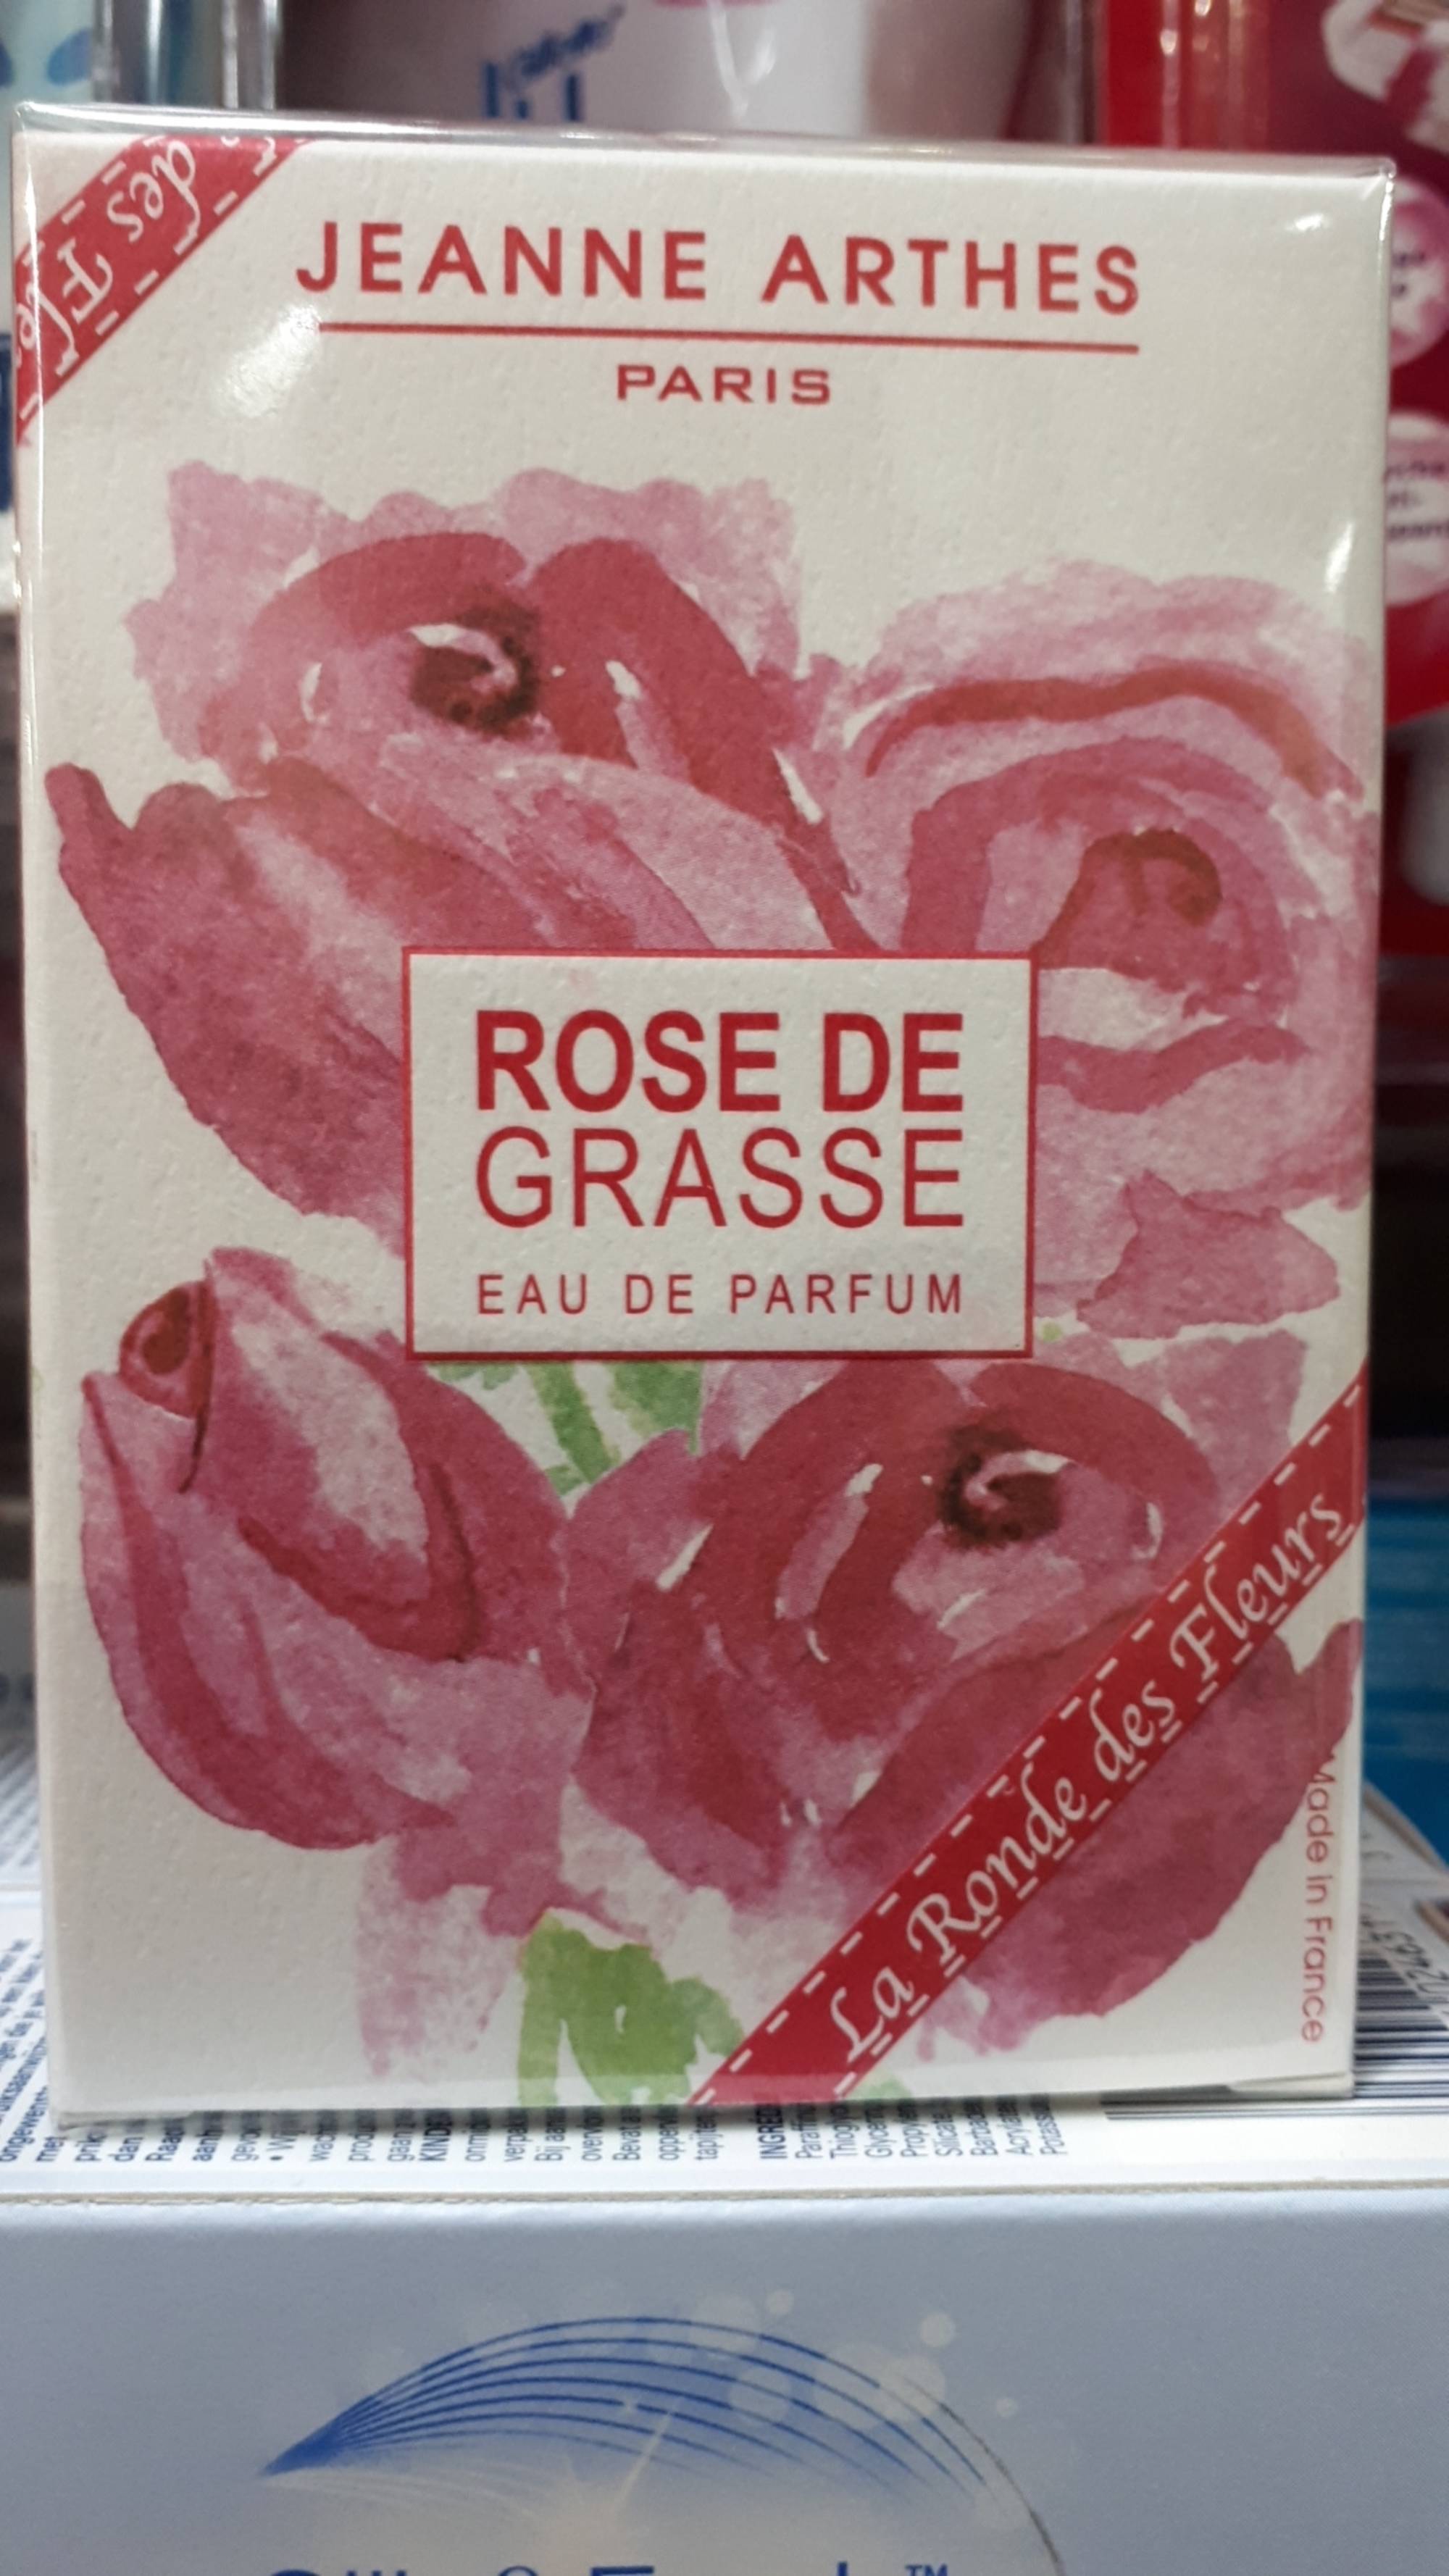 JEANNE ARTHES - Rose de Grasse - Eau de parfum